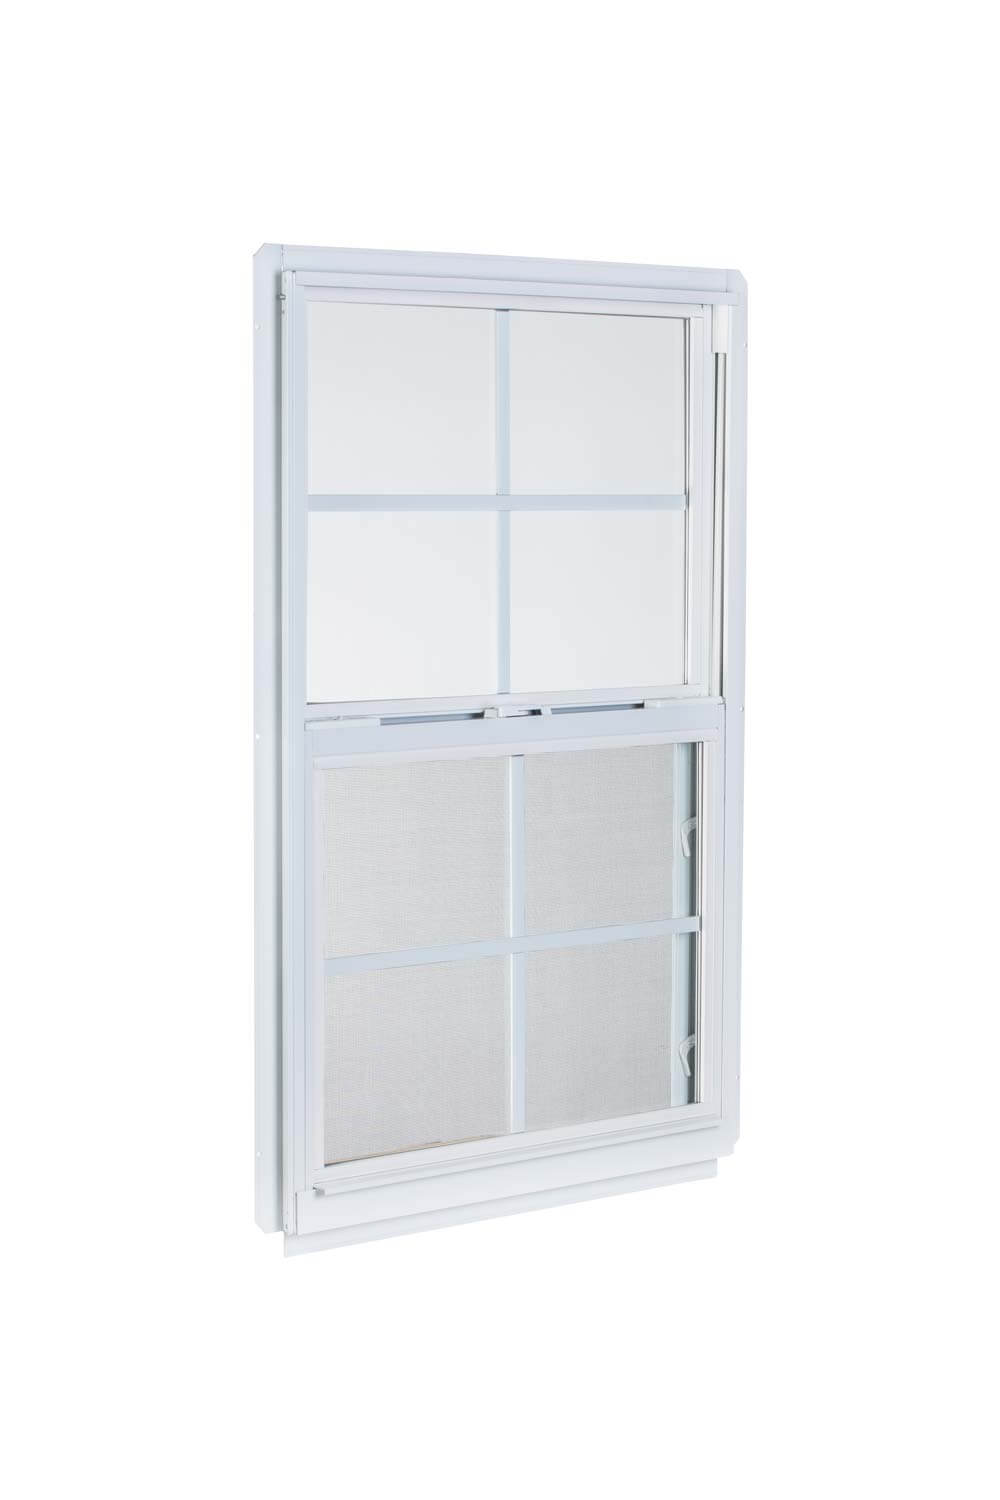 2' x 4'4" White Aluminum Insulated Window (4/4 Window Pane Arrangement) Series 96